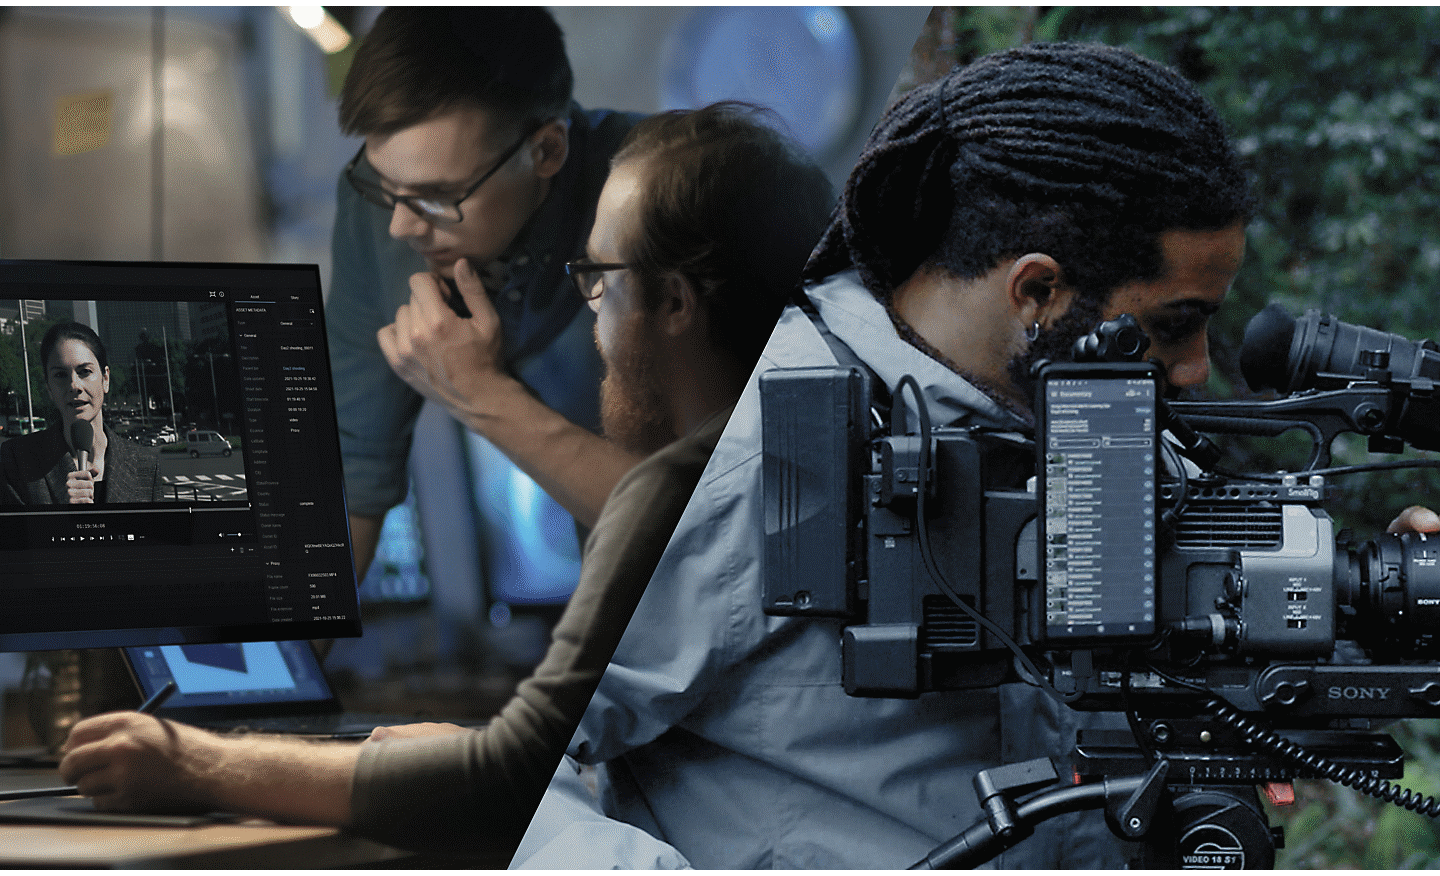 Une équipe de tournage de trois personnes est dans un boisé et l’homme au centre ajuste une caméra de cinéma Sony connectée au nuage grâce à un téléphone intelligent Xperia.